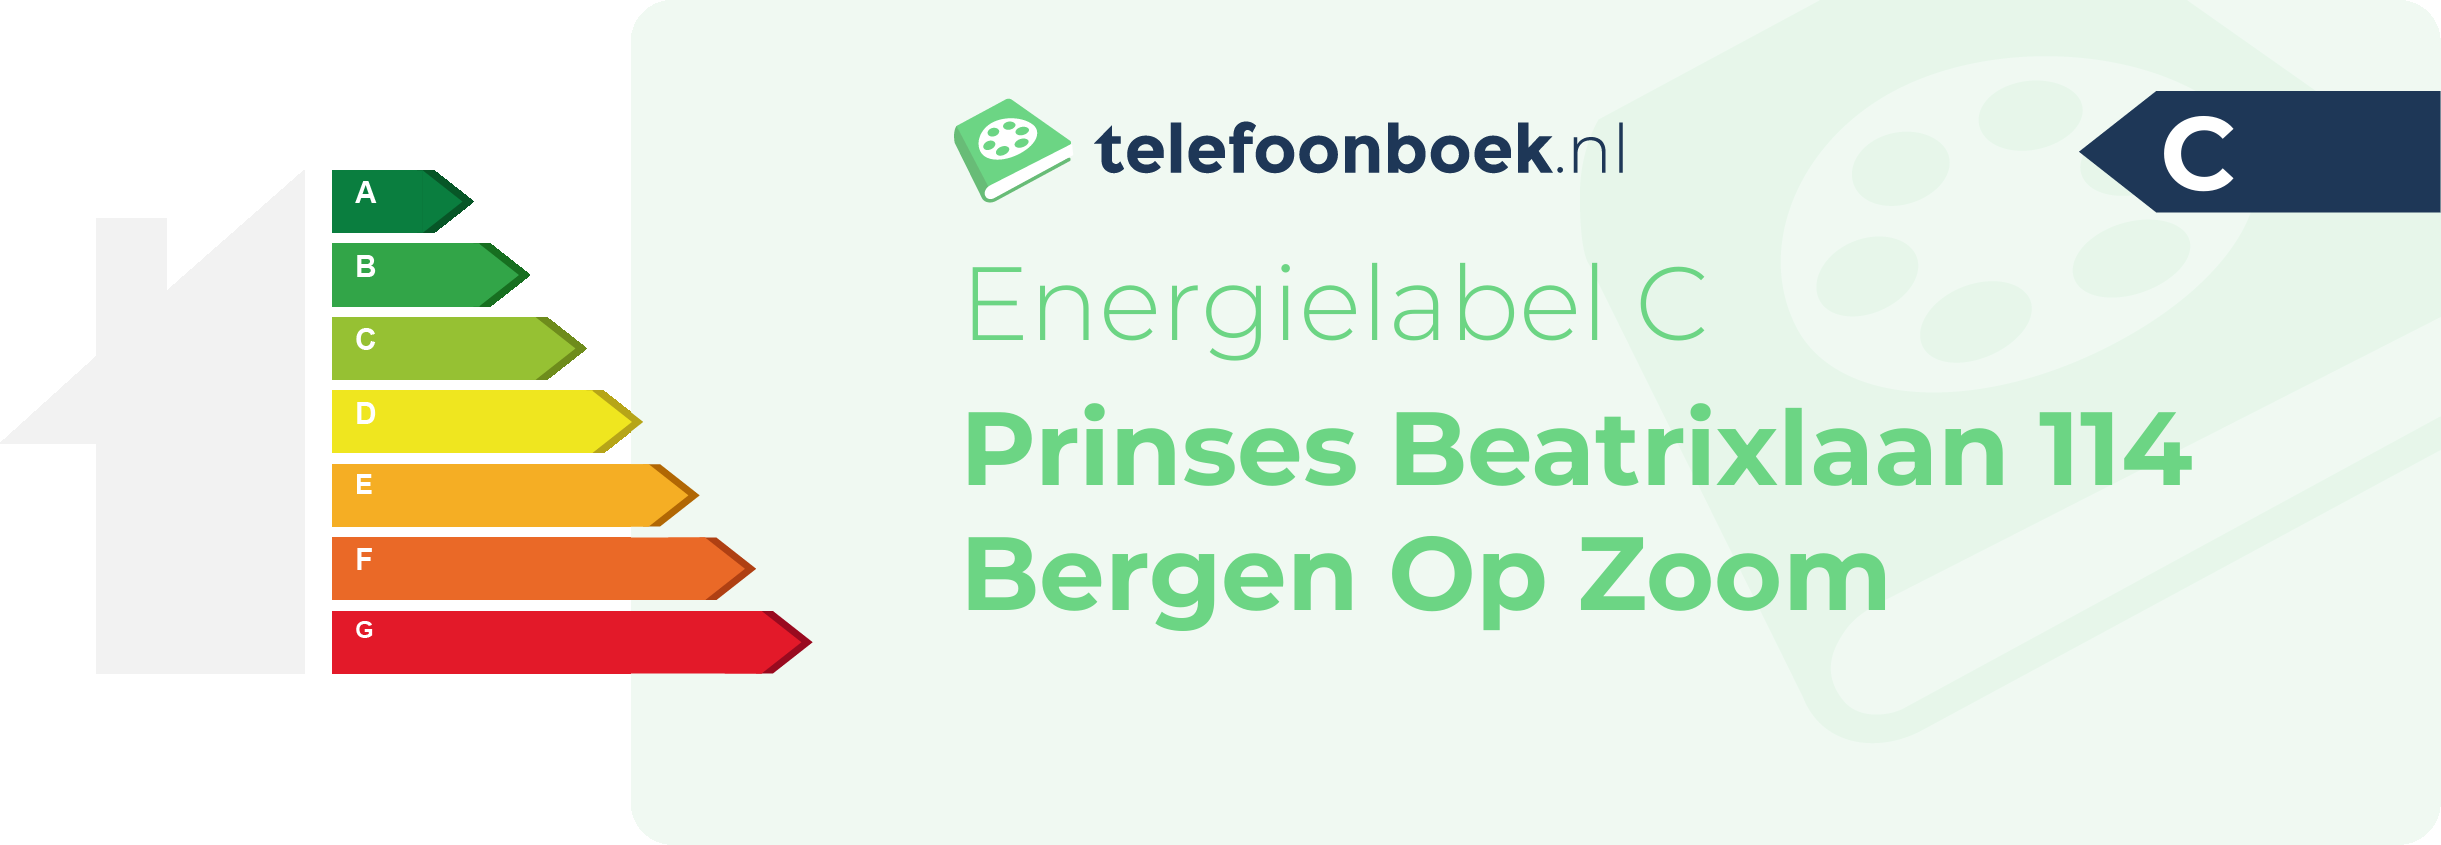 Energielabel Prinses Beatrixlaan 114 Bergen Op Zoom